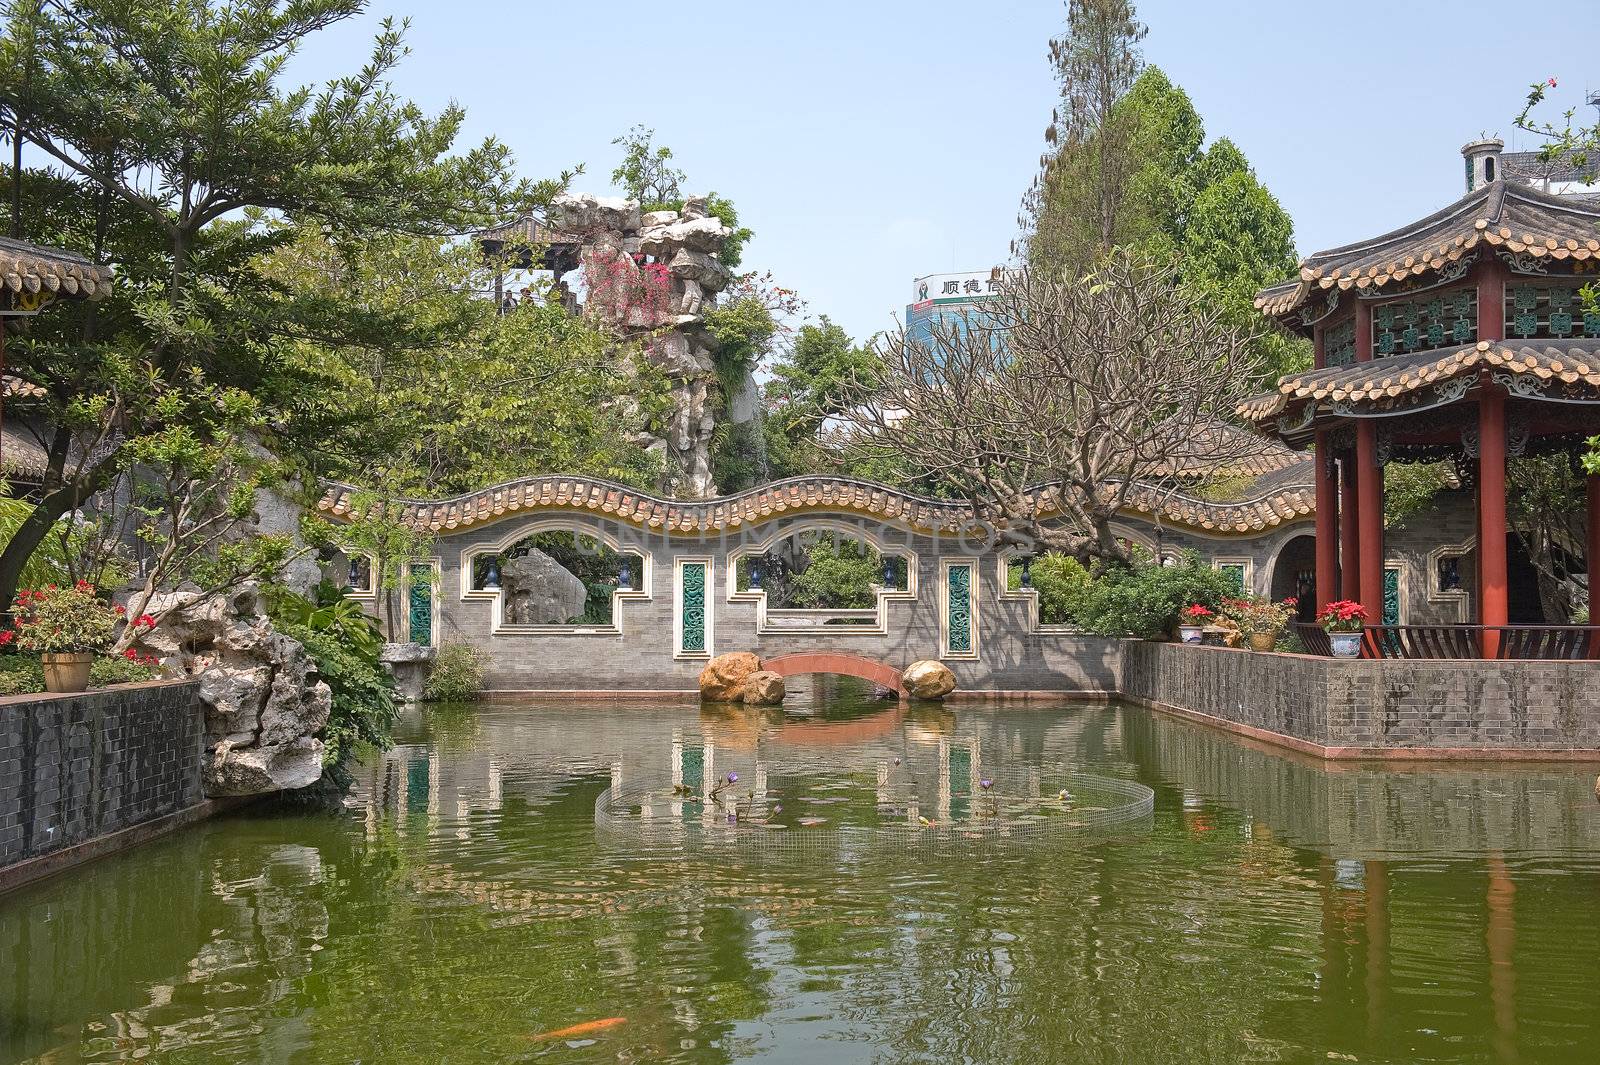 Qinghui garden bridge by Marcus